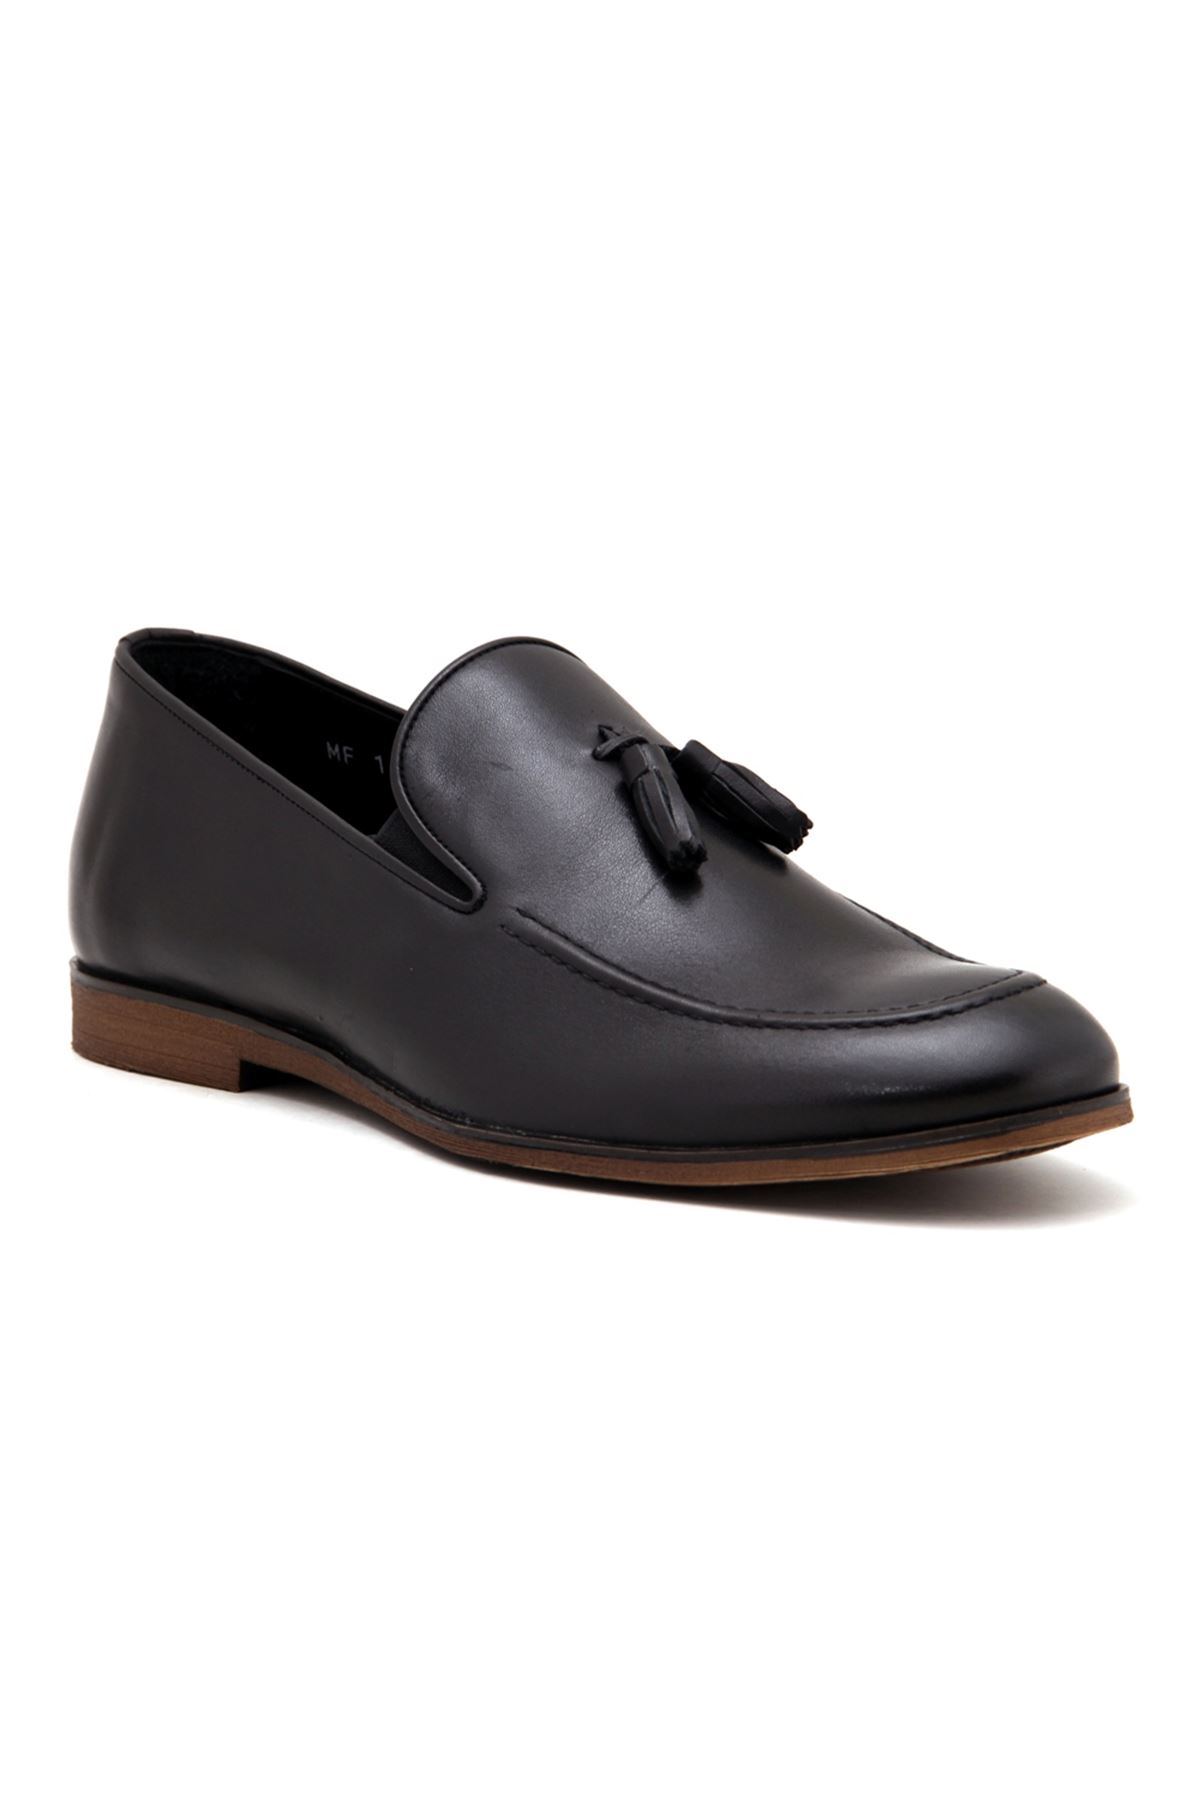 165 Libero Klasik Erkek Ayakkabı - Siyah